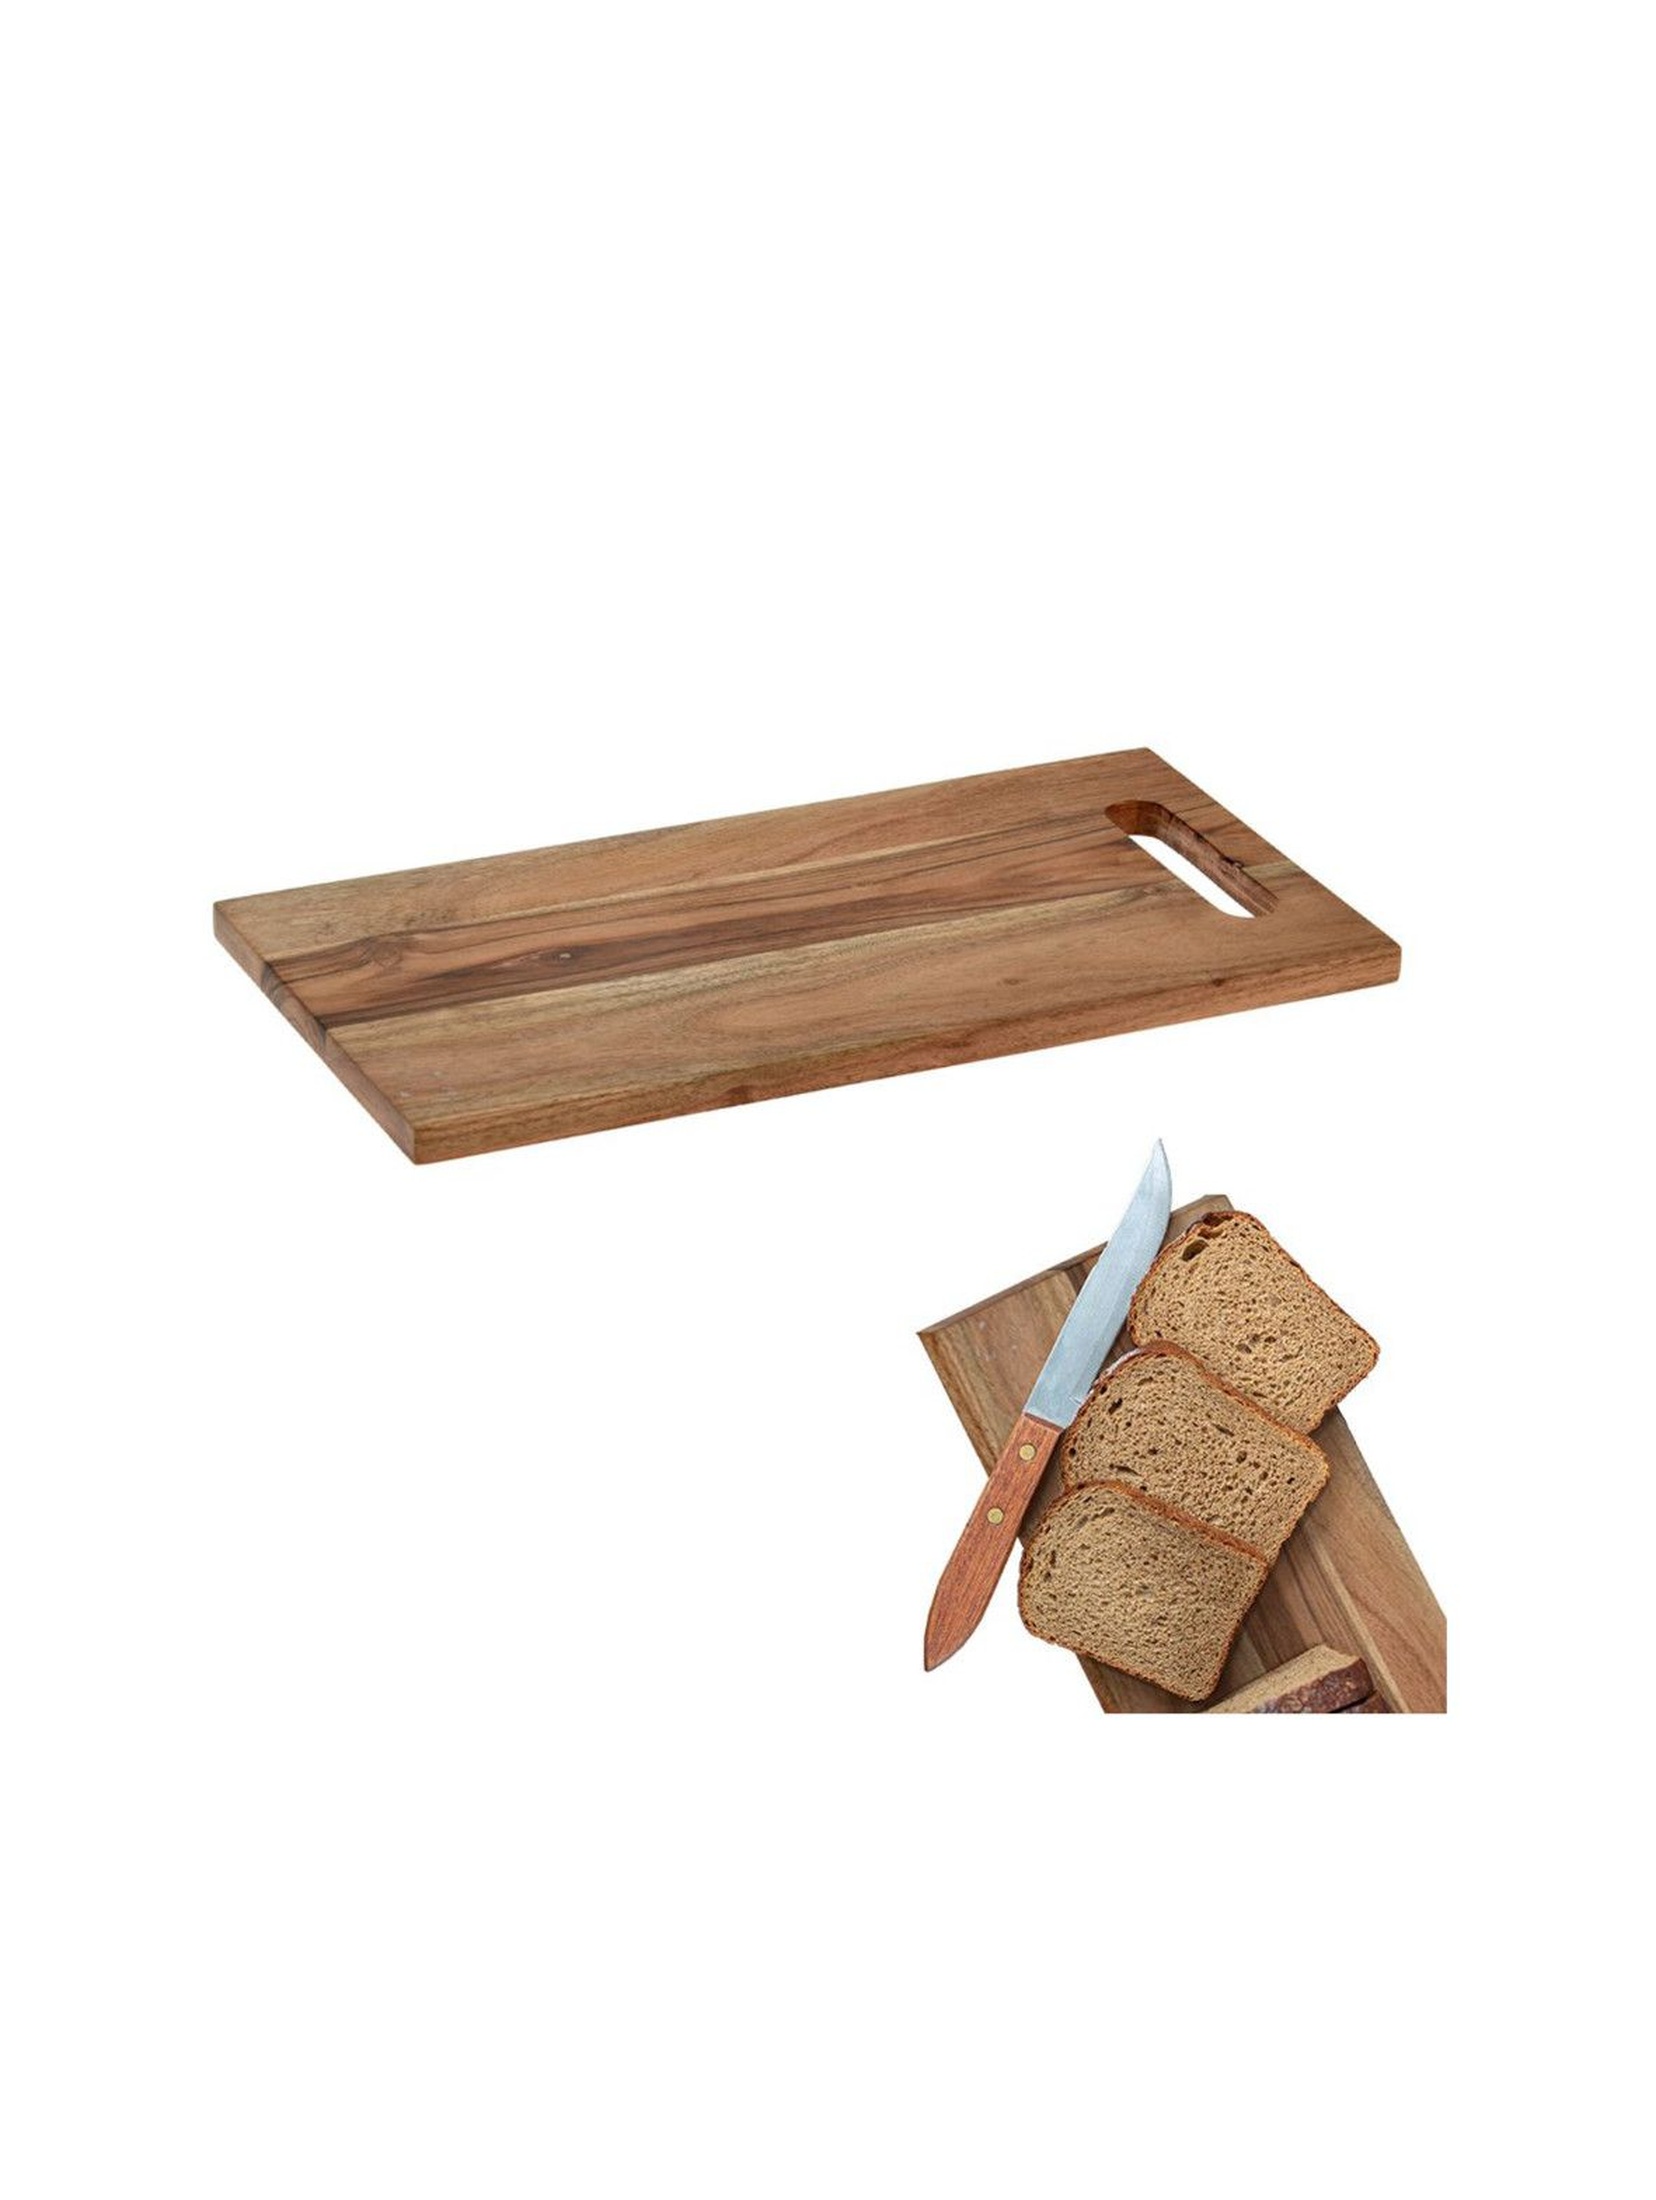 Kuchenna drewniana deska do krojenia serwowania z uchwytem 40x20cm